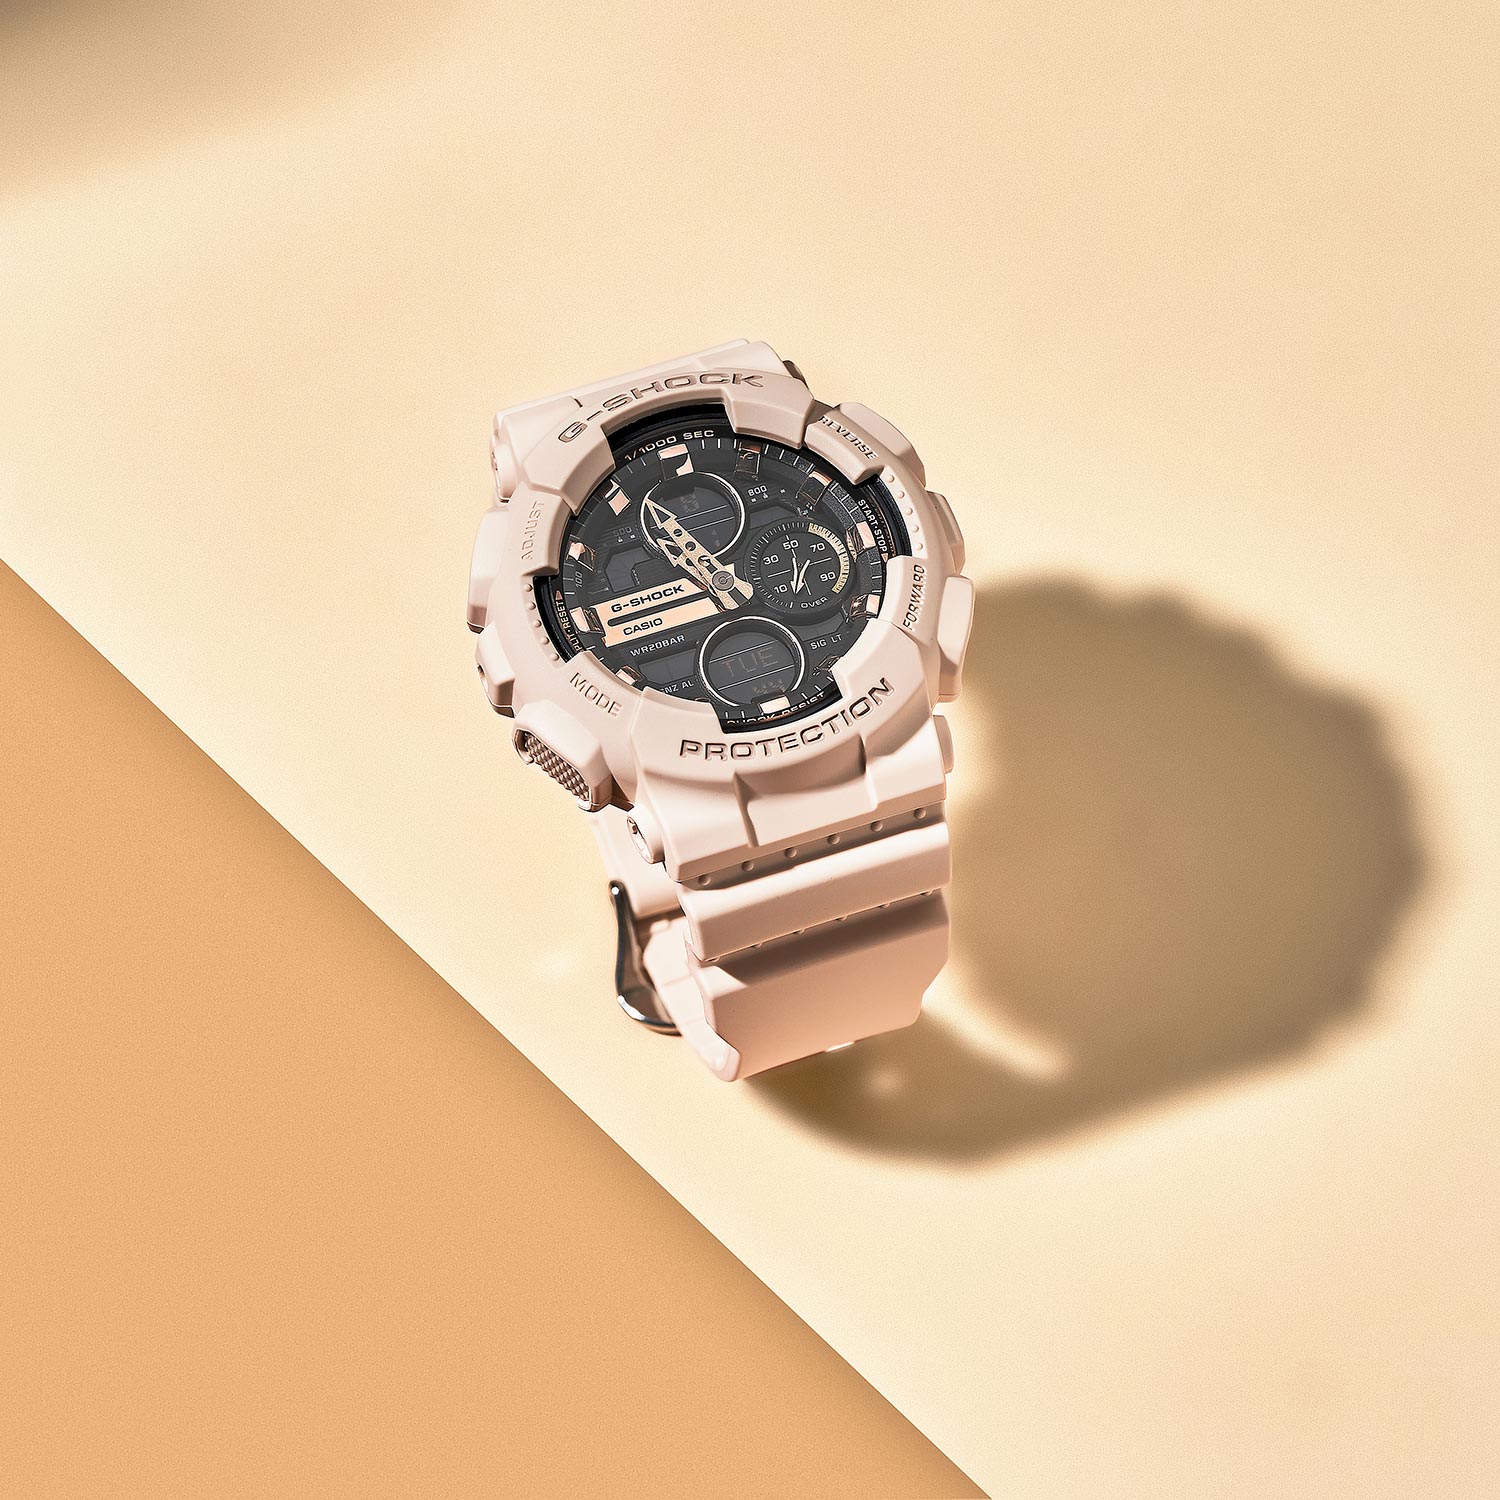 Наручные часы Casio G-SHOCK GMA-S140M-4AER — купить в интернет-магазине  AllTime.ru по лучшей цене, отзывы, фото, характеристики, инструкция,  описание